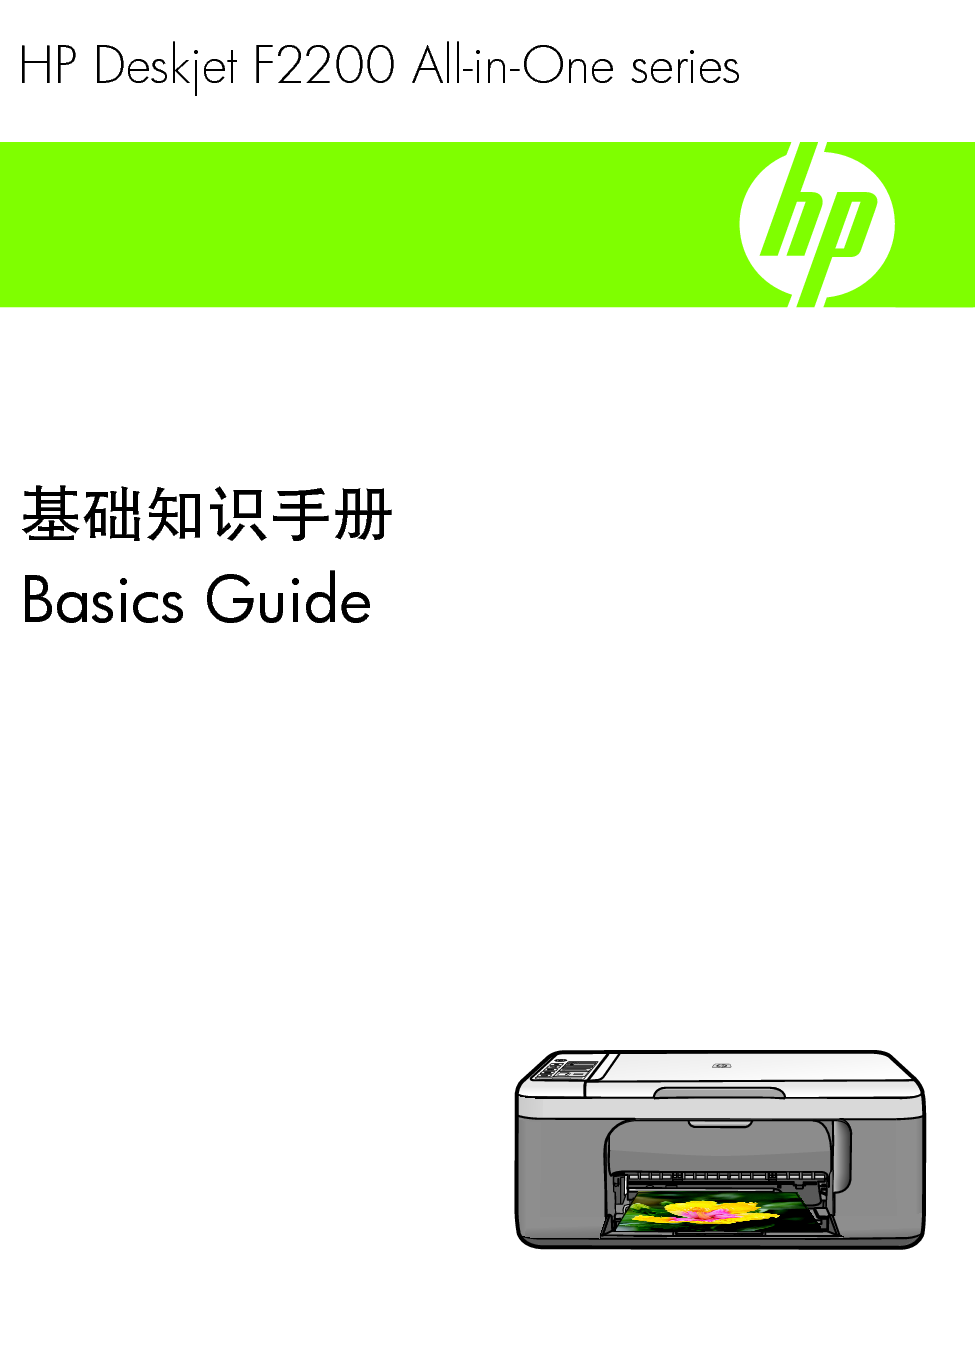 惠普 HP DeskJet F2200 基础使用指南 封面